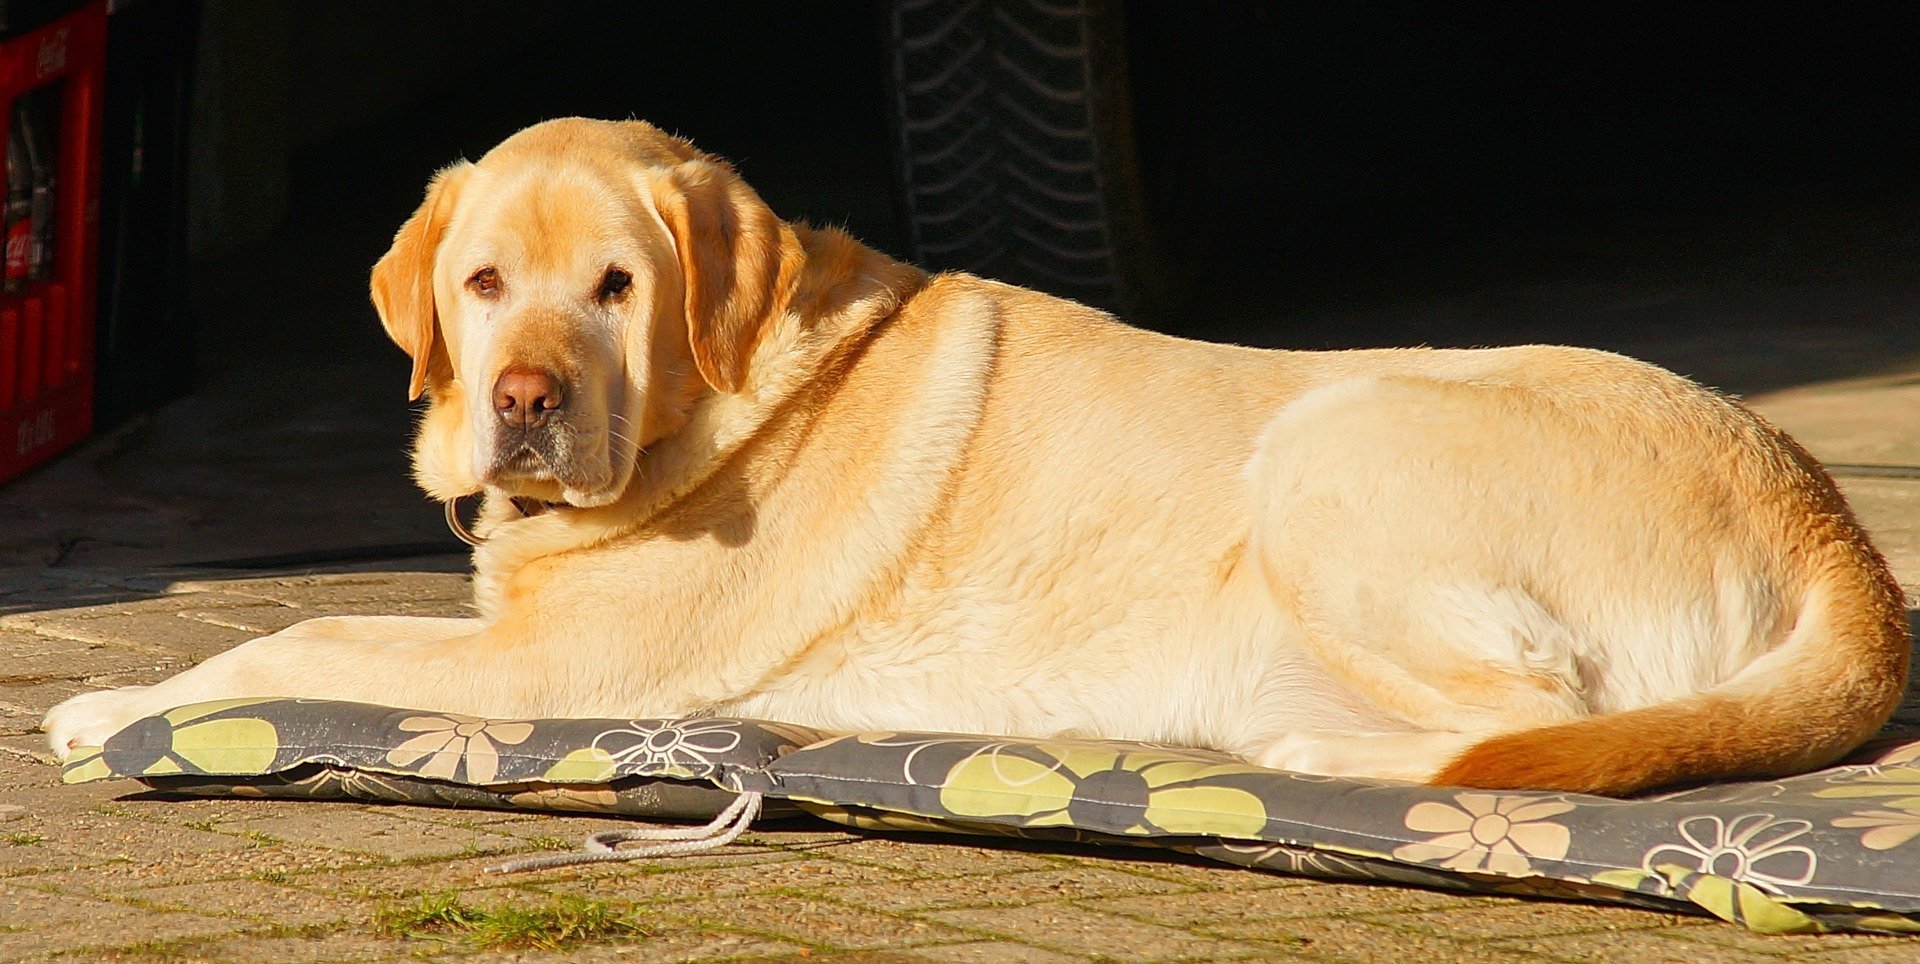 Labrador descansando sobre una estera. | Imagen: Pixabay